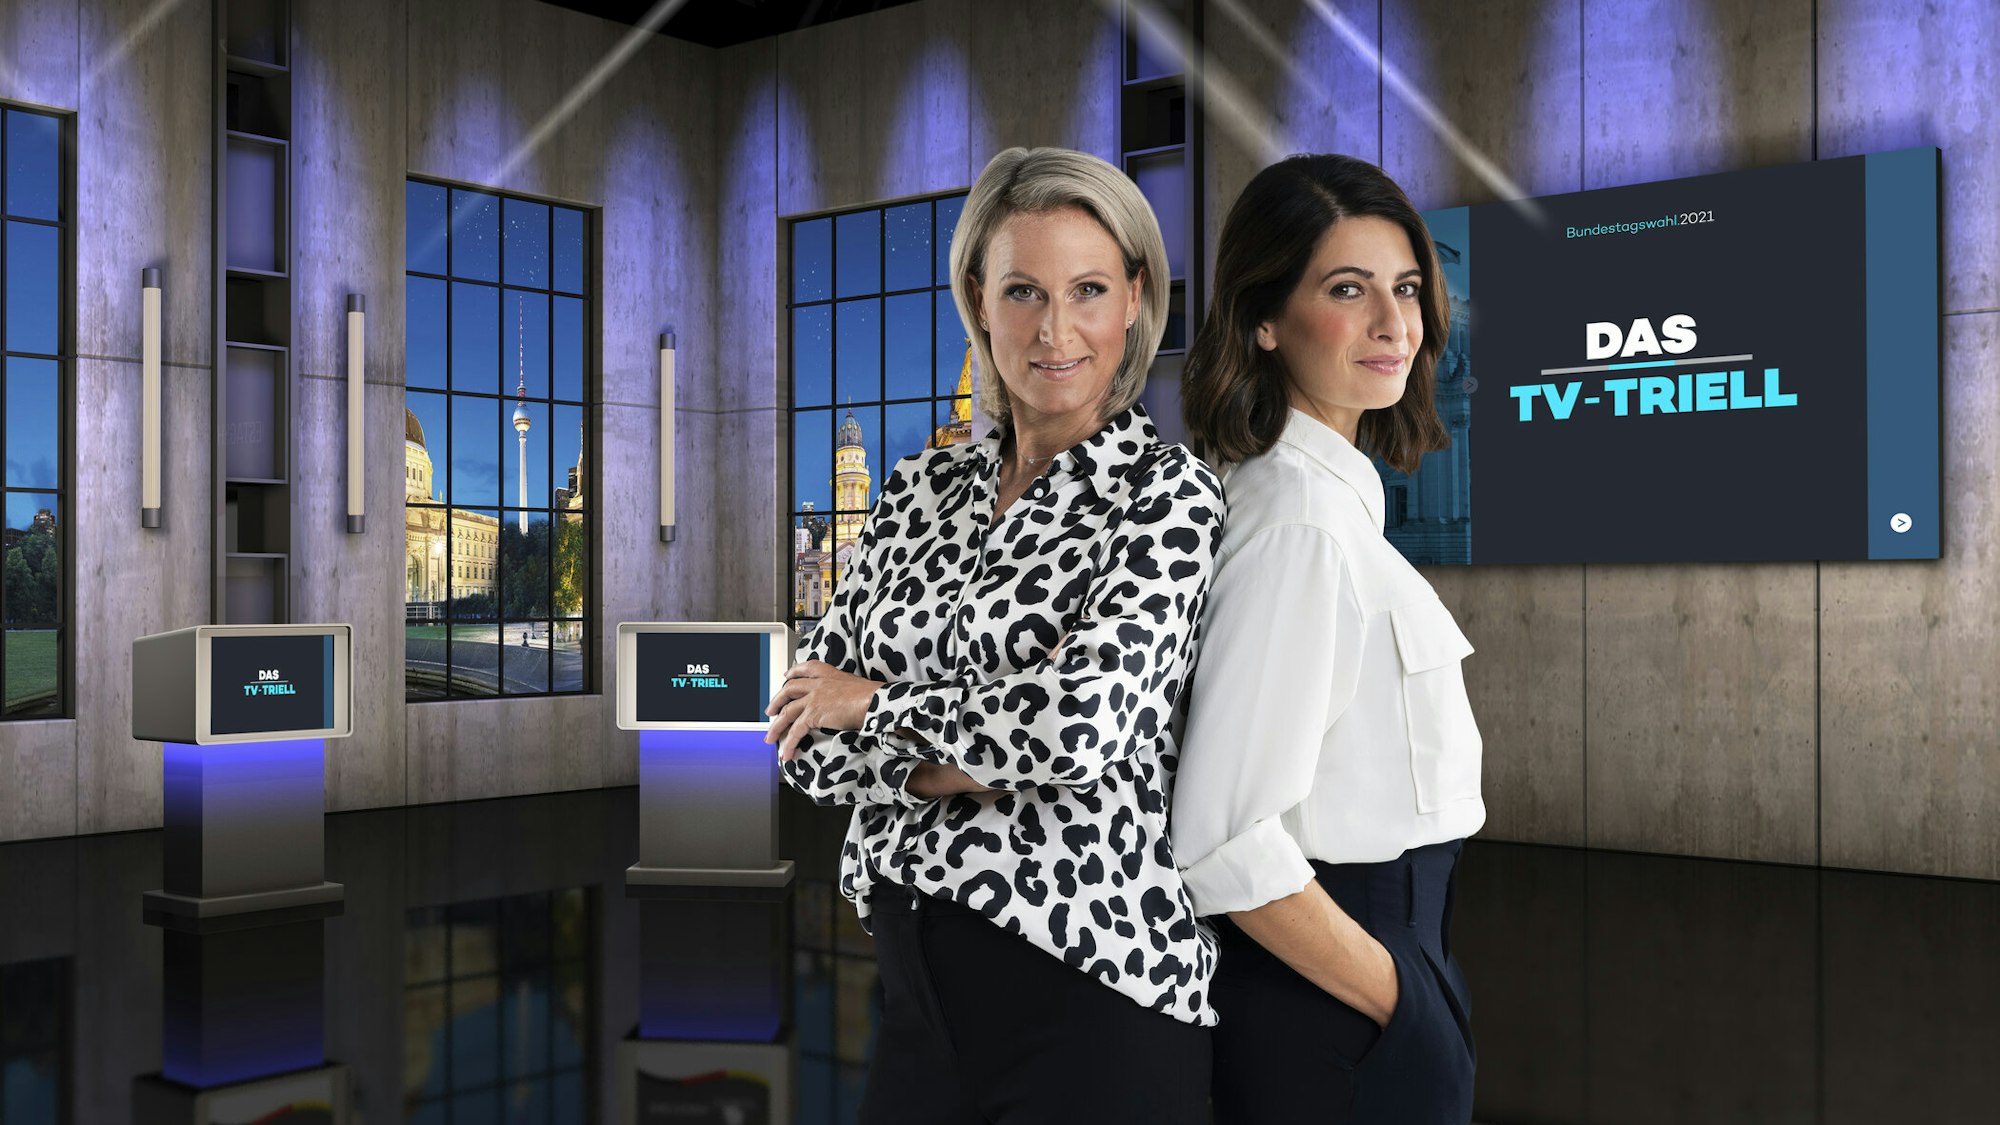 Das dritte und letzte TV-Triell wurde für die ProSieben-Gruppe von Linda Zervakis (r.) und Claudia von Brauchitsch moderiert. Letztere geriet in die Kritik, weil sie zuvor auch beim Parteisender CDU.tv arbeitete. 